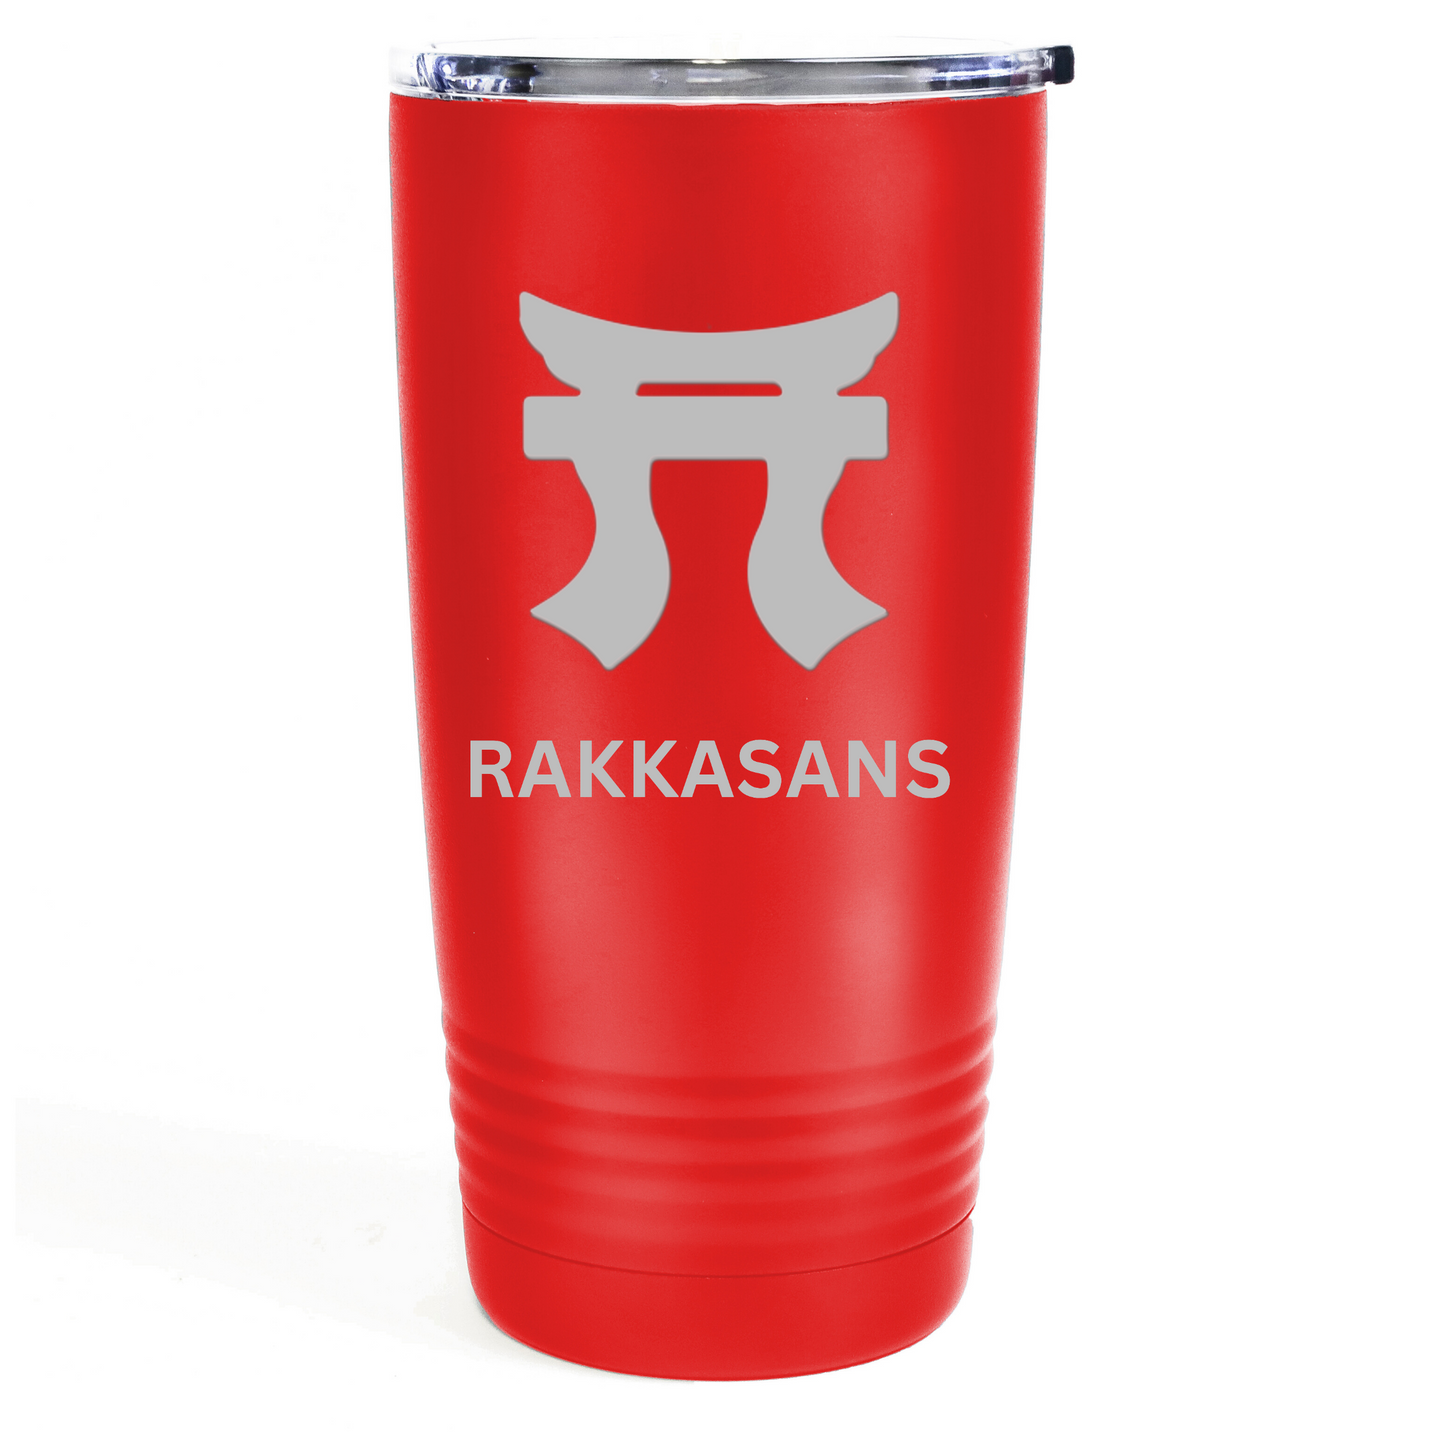 "Red Rakkasans 20oz Stainless Steel Tumbler with Laser Engraved Design."